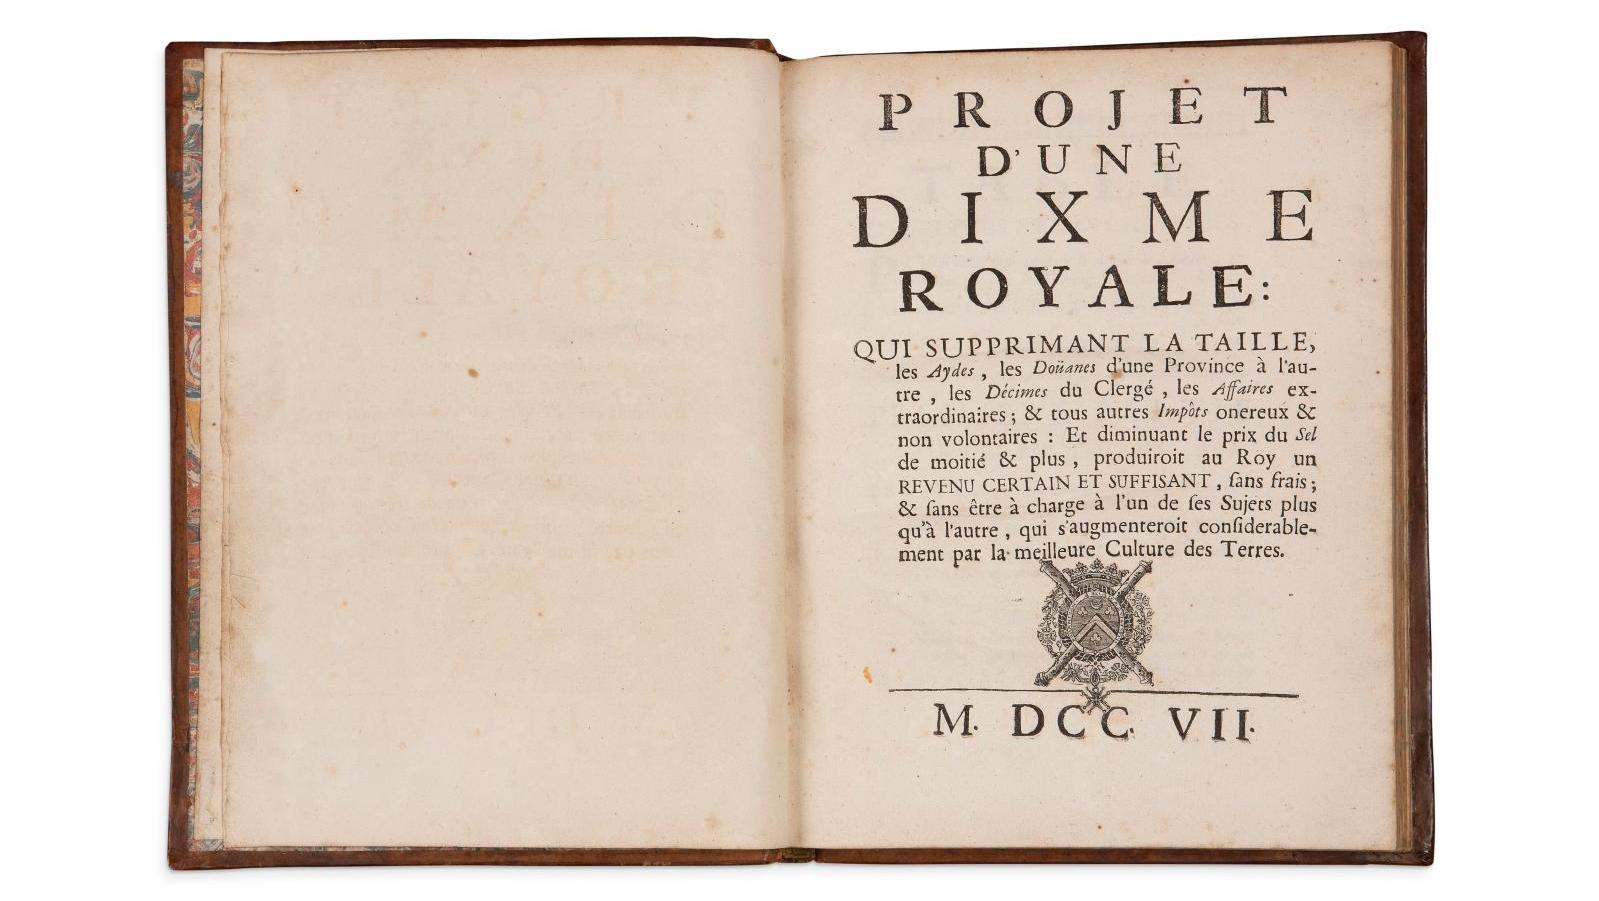 Sébastien Le Prestre de Vauban (1633-1707), "Projet d’une dixme royale", (Rouen)... Aristophil Reaches Cruising Speed